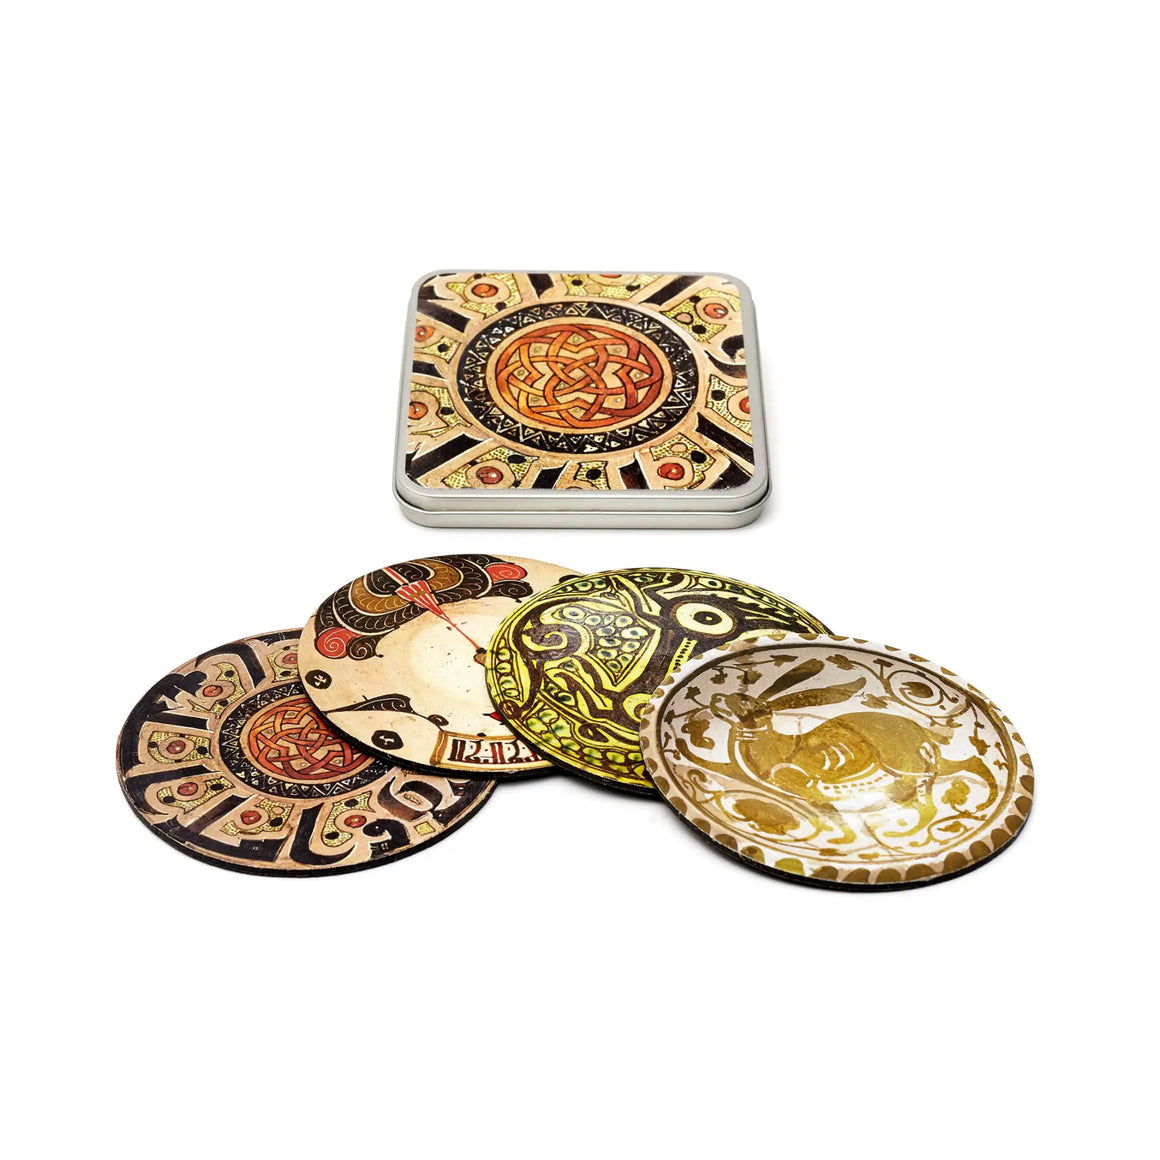 Aga Khan Museum Coaster Set - Bellerive, Dish & Bowl Designs